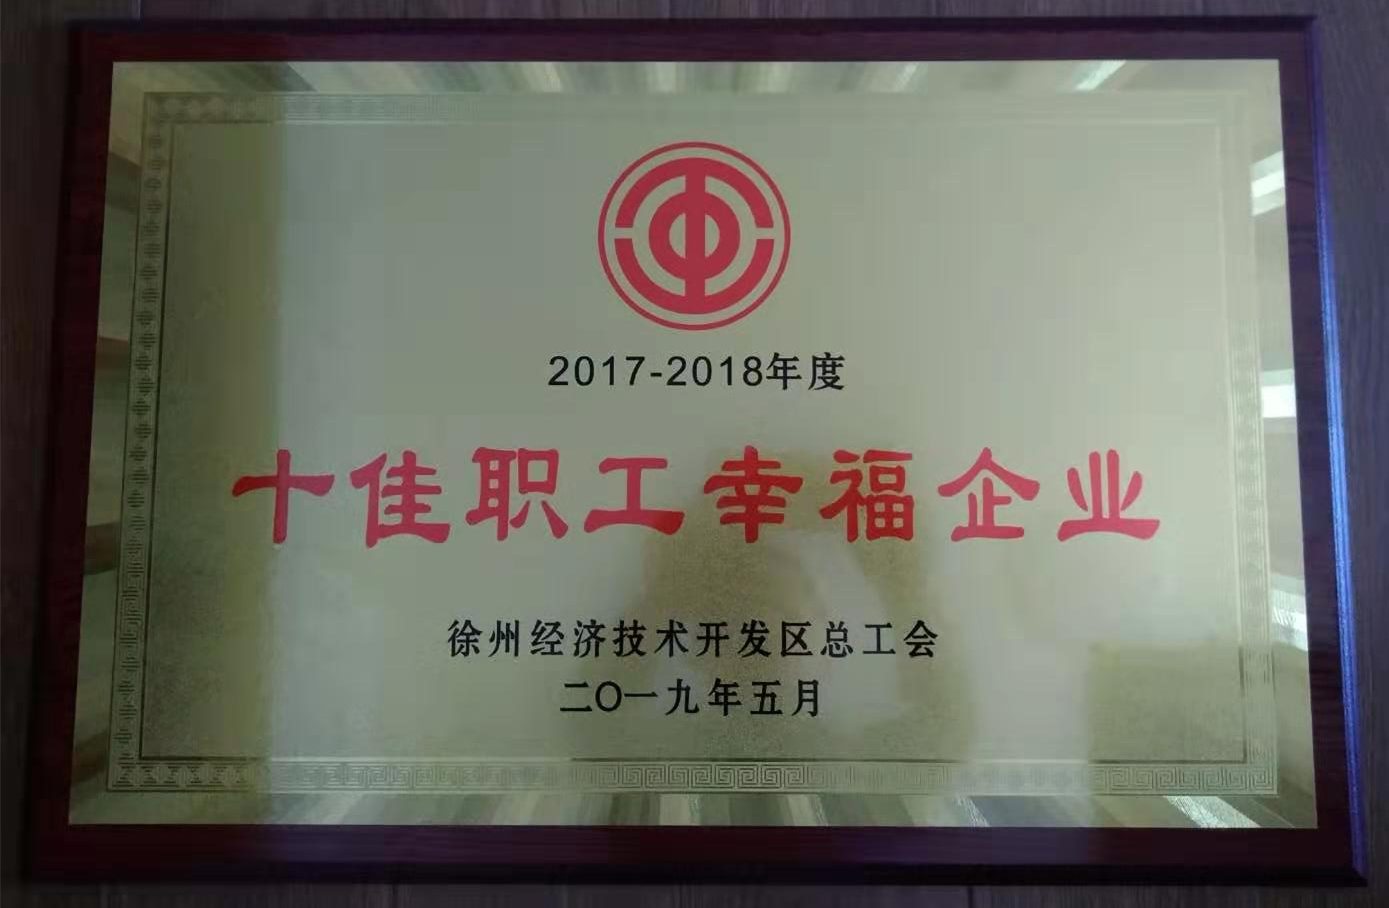 超力公司荣获徐州市经济技术开发区"十佳幸福企业”